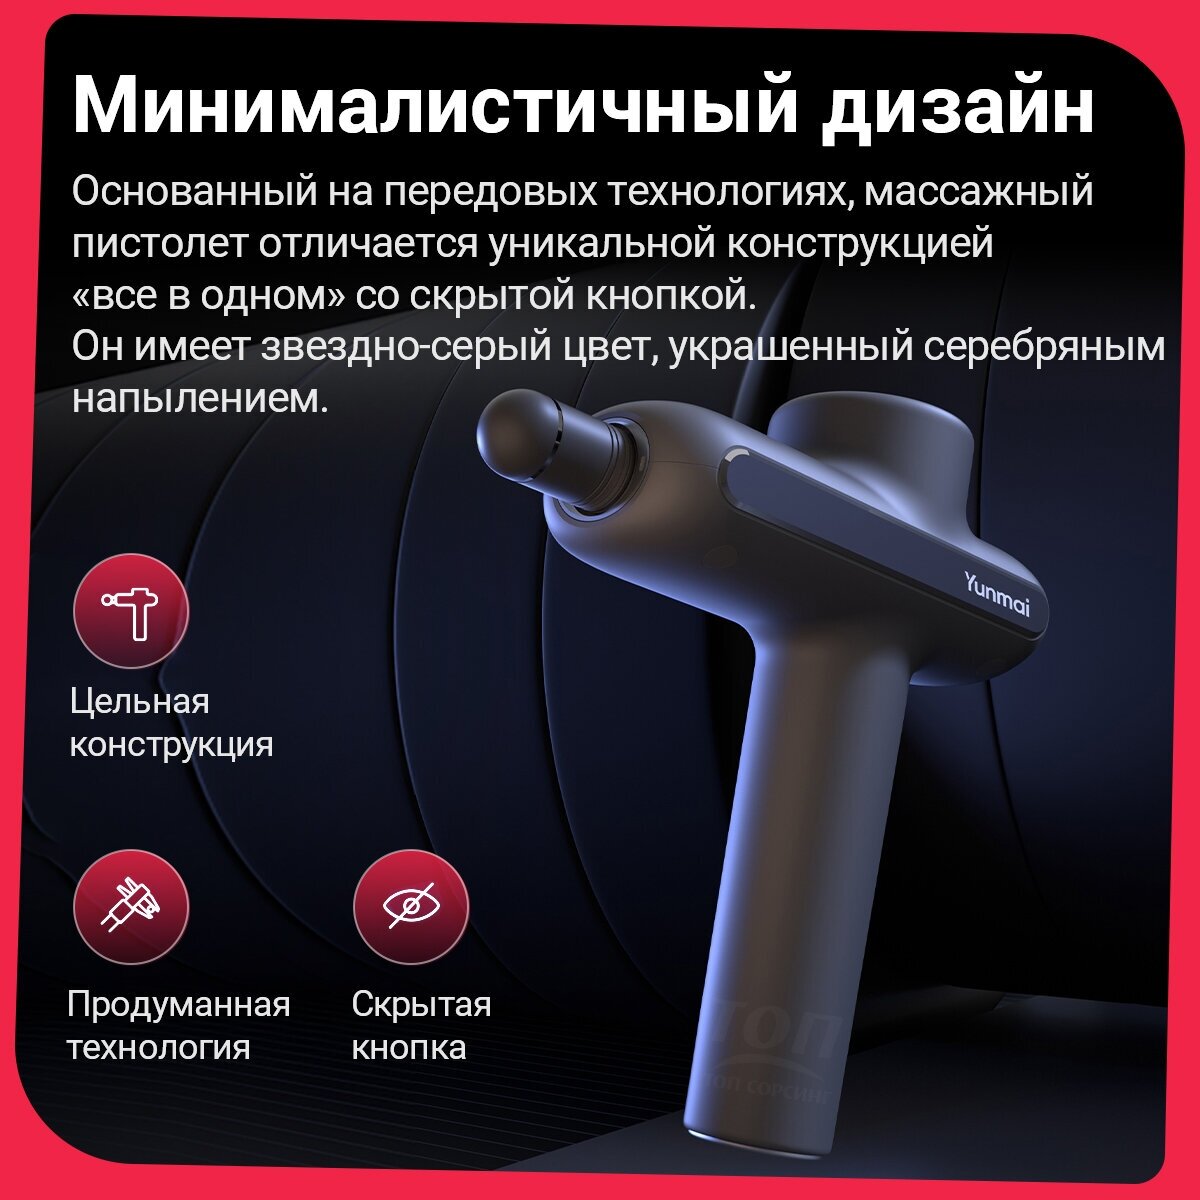 Улучшенная версия Перкуссионный массажер Yunmai Fascia NEW Pro Basic Massager YMFG-B563 (Русская версия) высокочастотная вибрация суббренд Xiaomi - фотография № 14